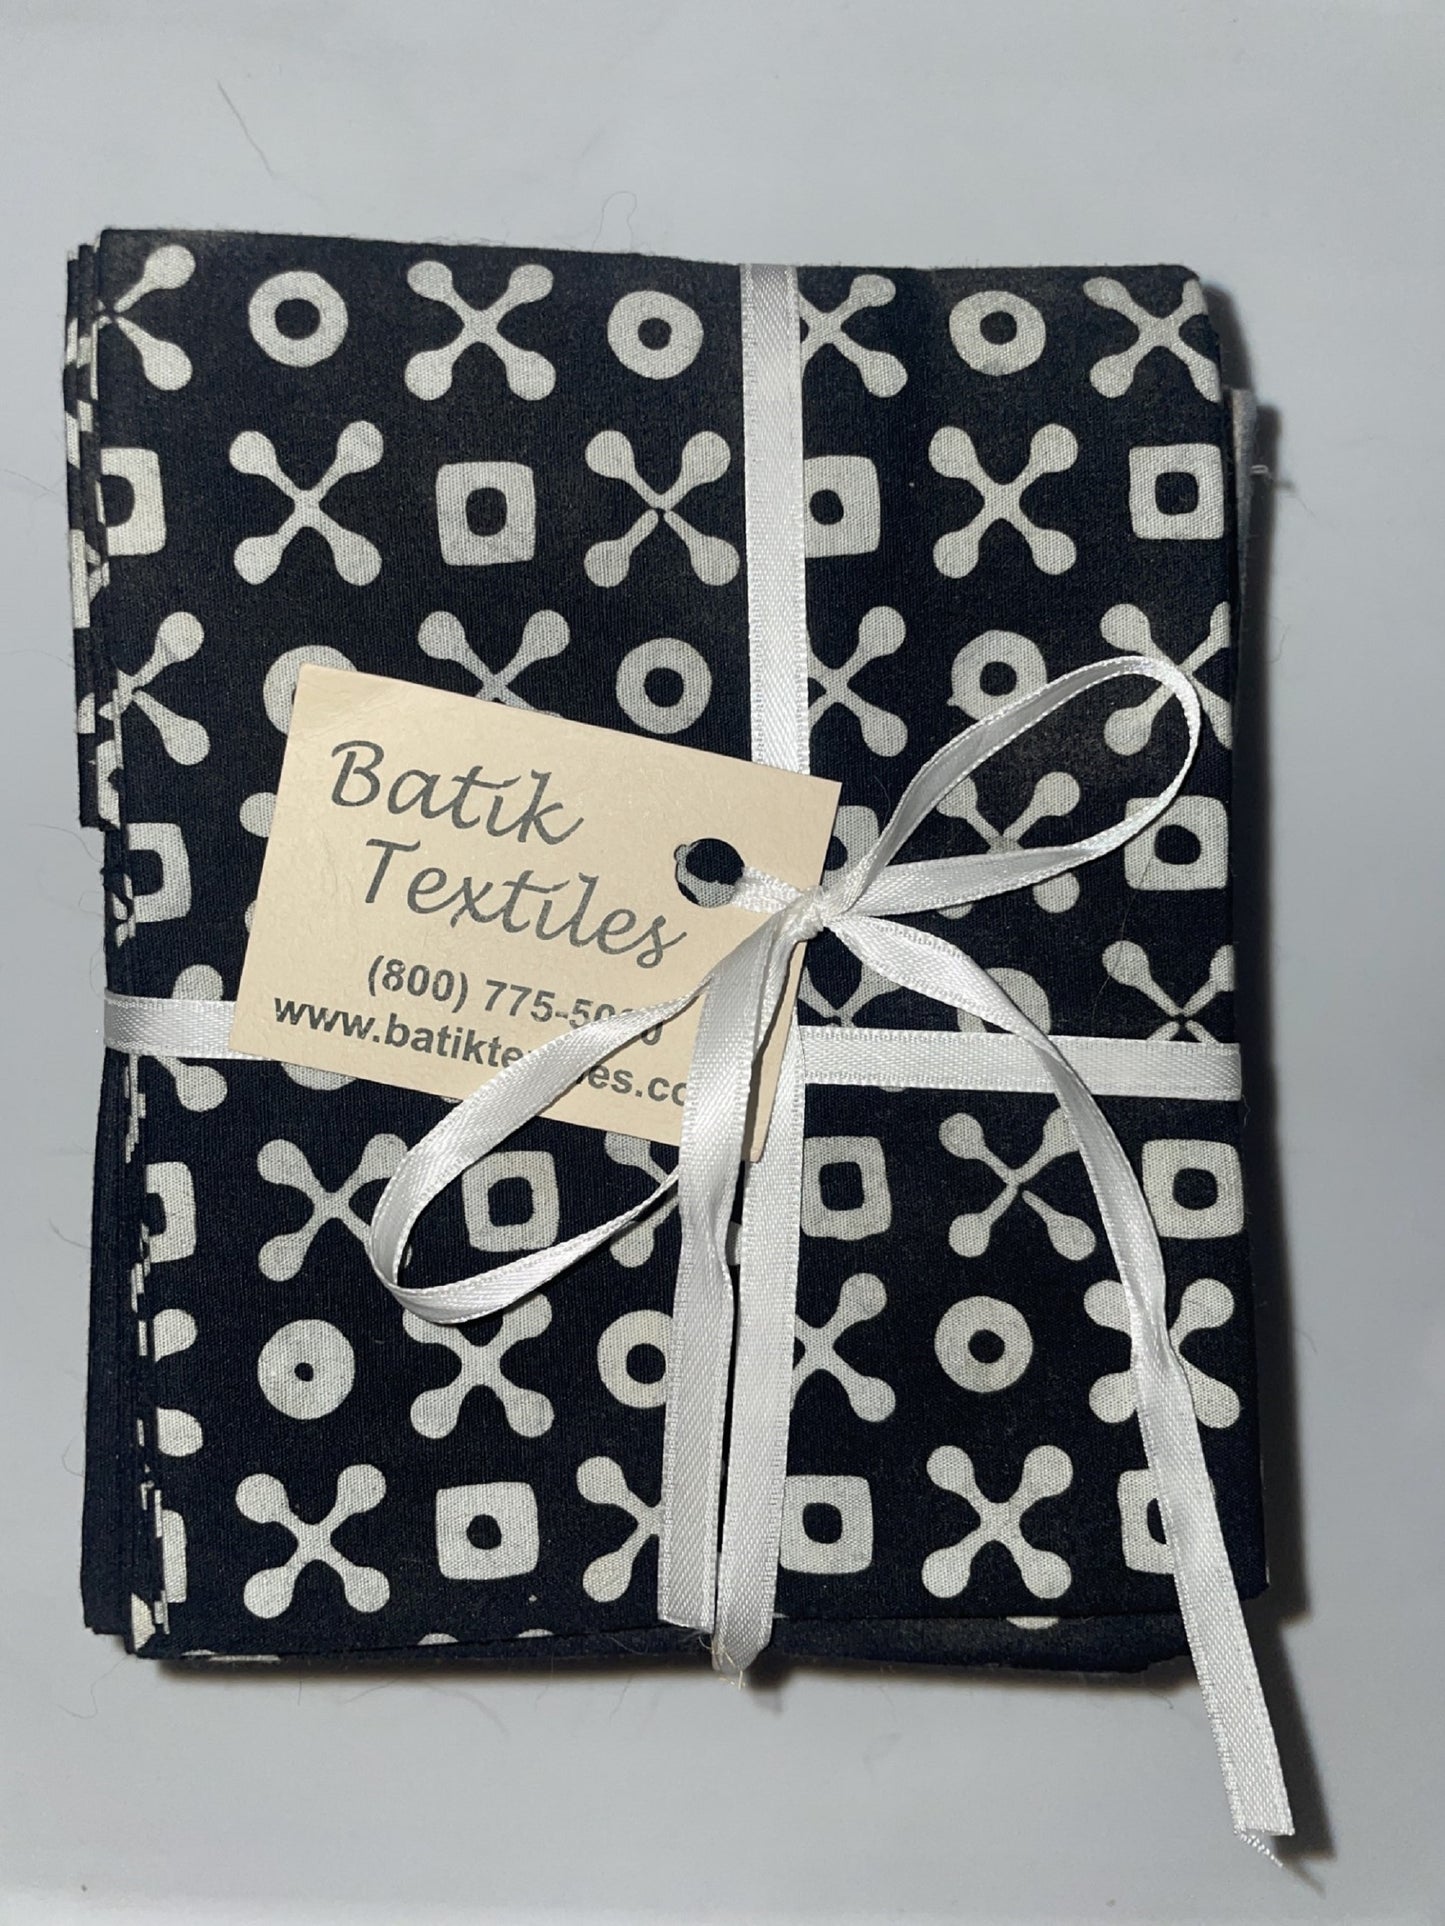 Fat Quarter Bundle-Blacks, Grays, Neutrals-Batik Textiles-16 Fat Quarters